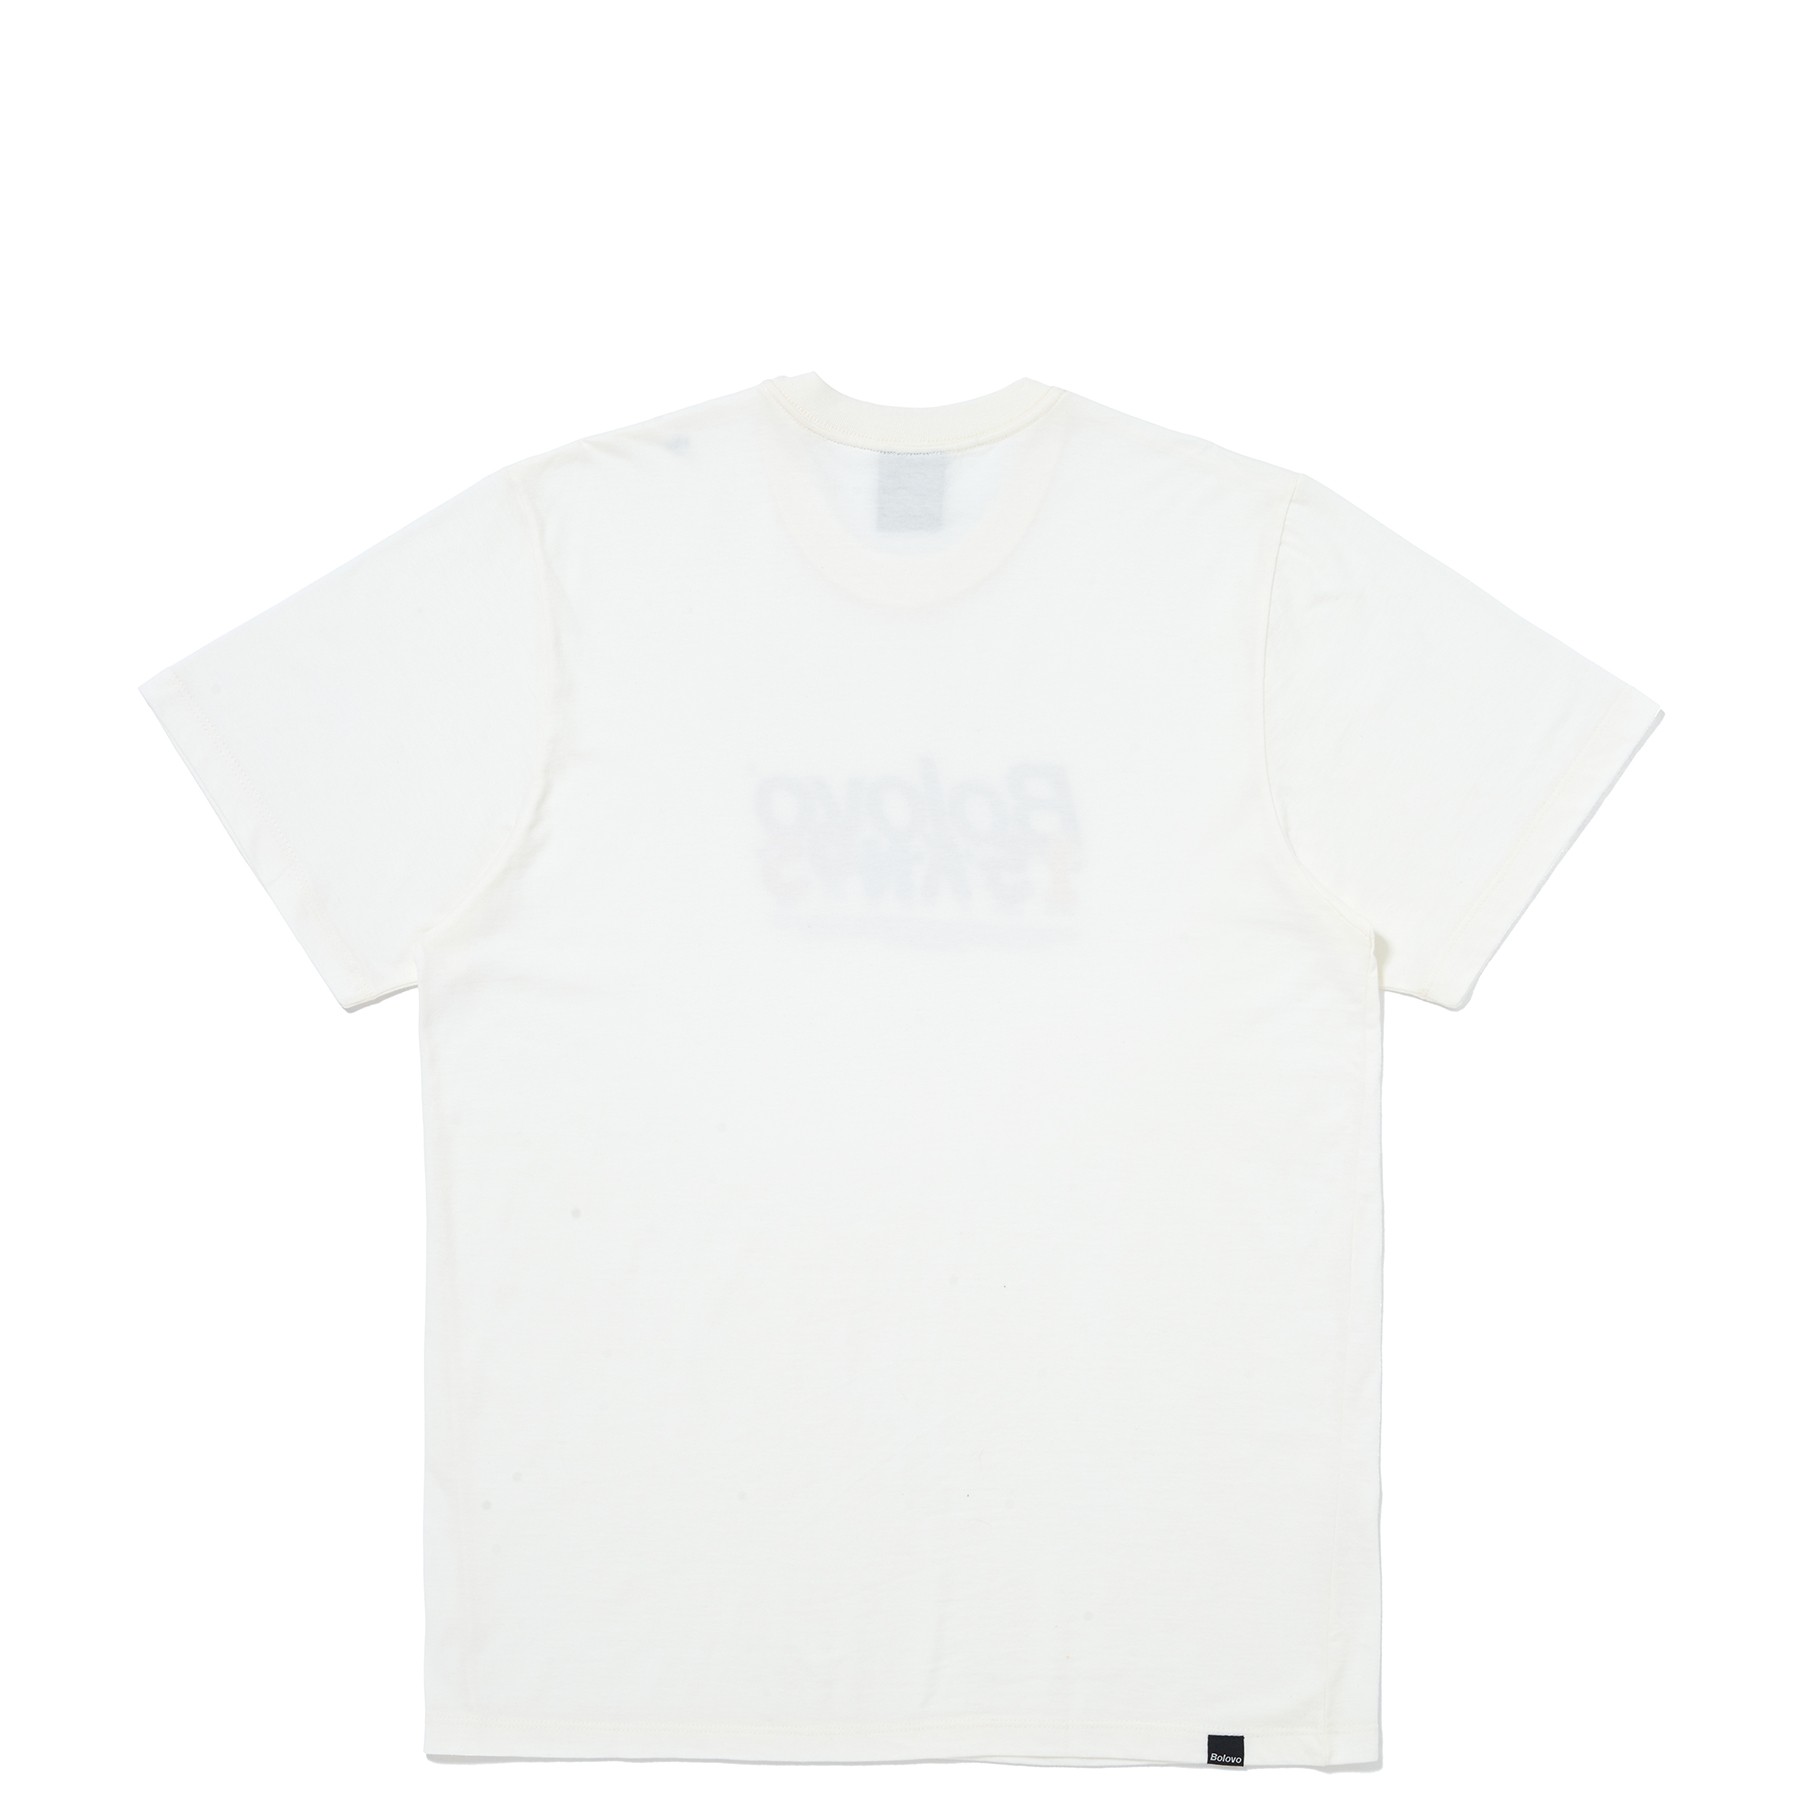 Camiseta 15 Anos ® Off White - BOLOVO